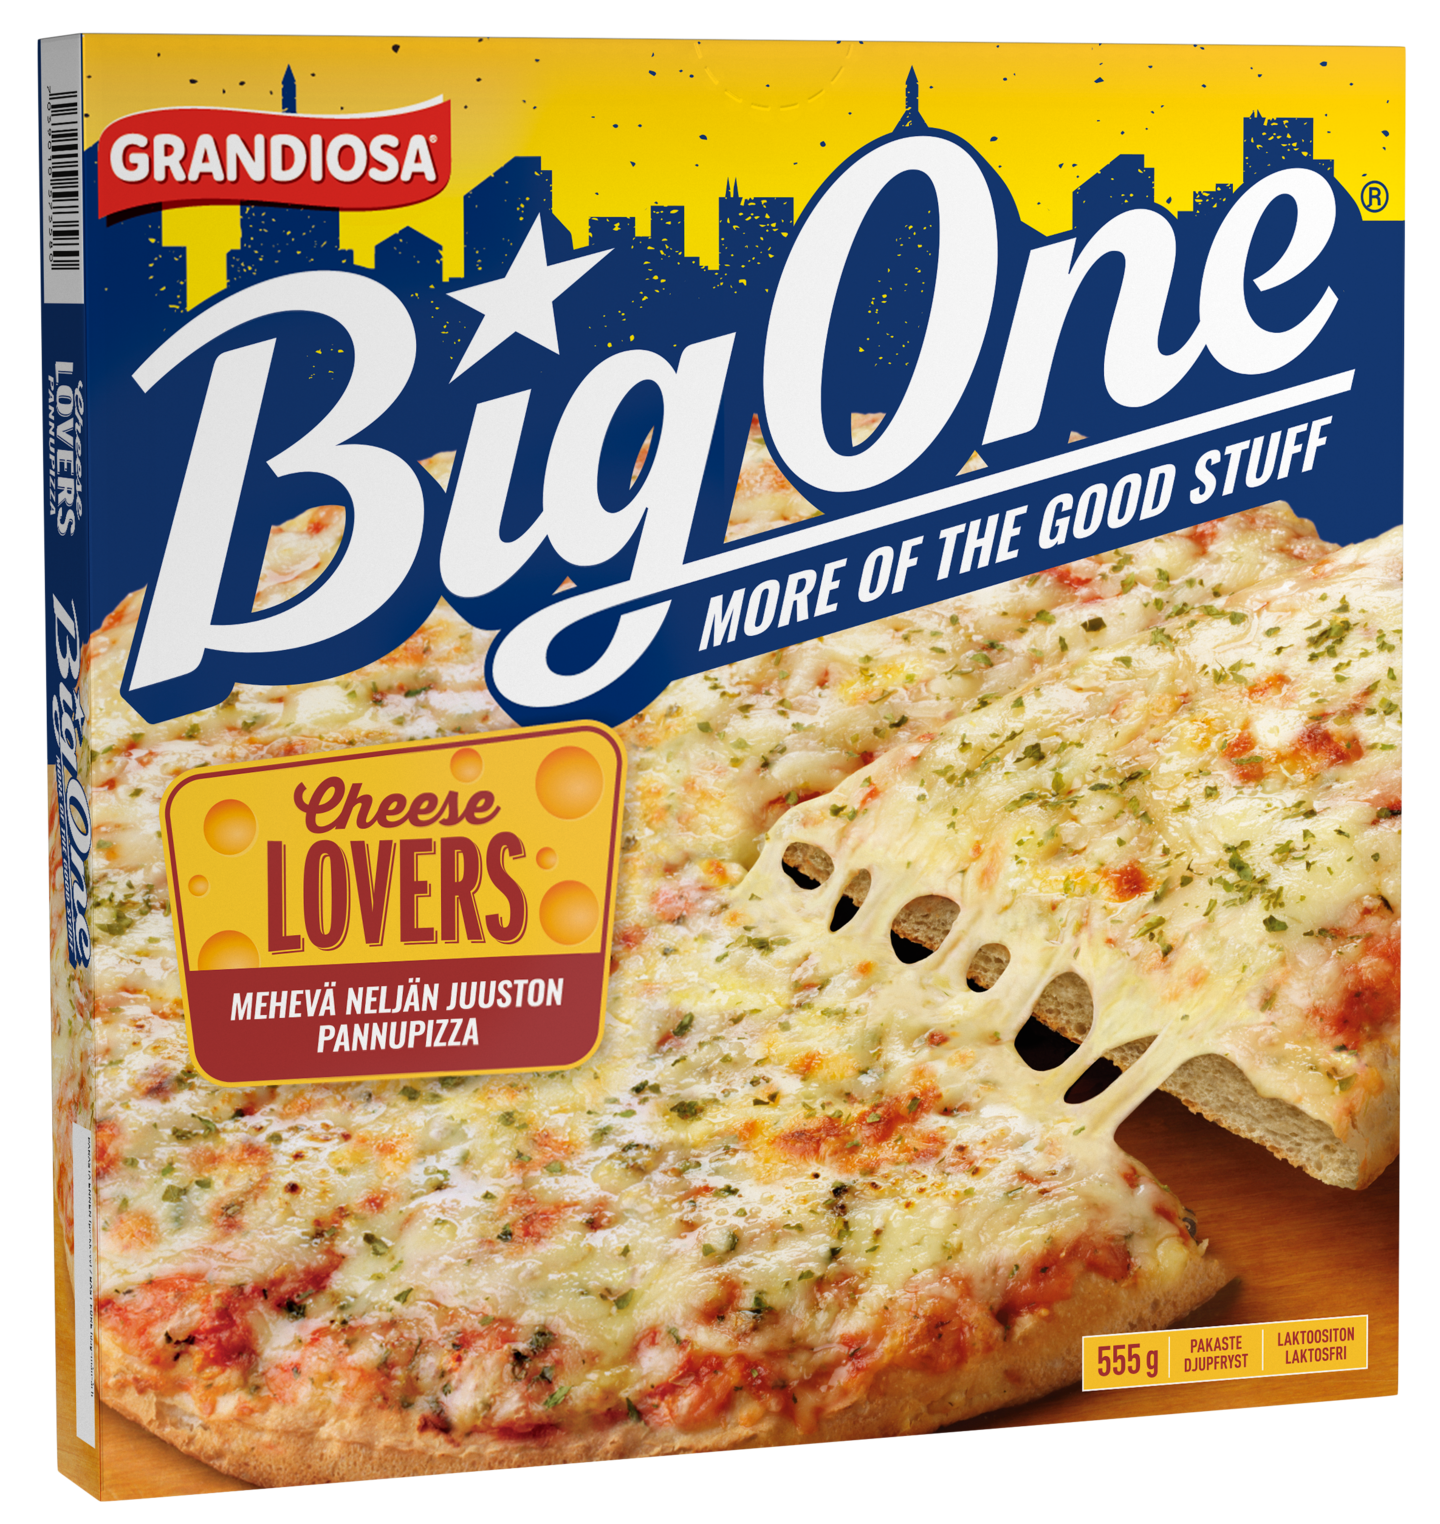 Grandiosa pizza Big One Cheese lovers 555g pakaste